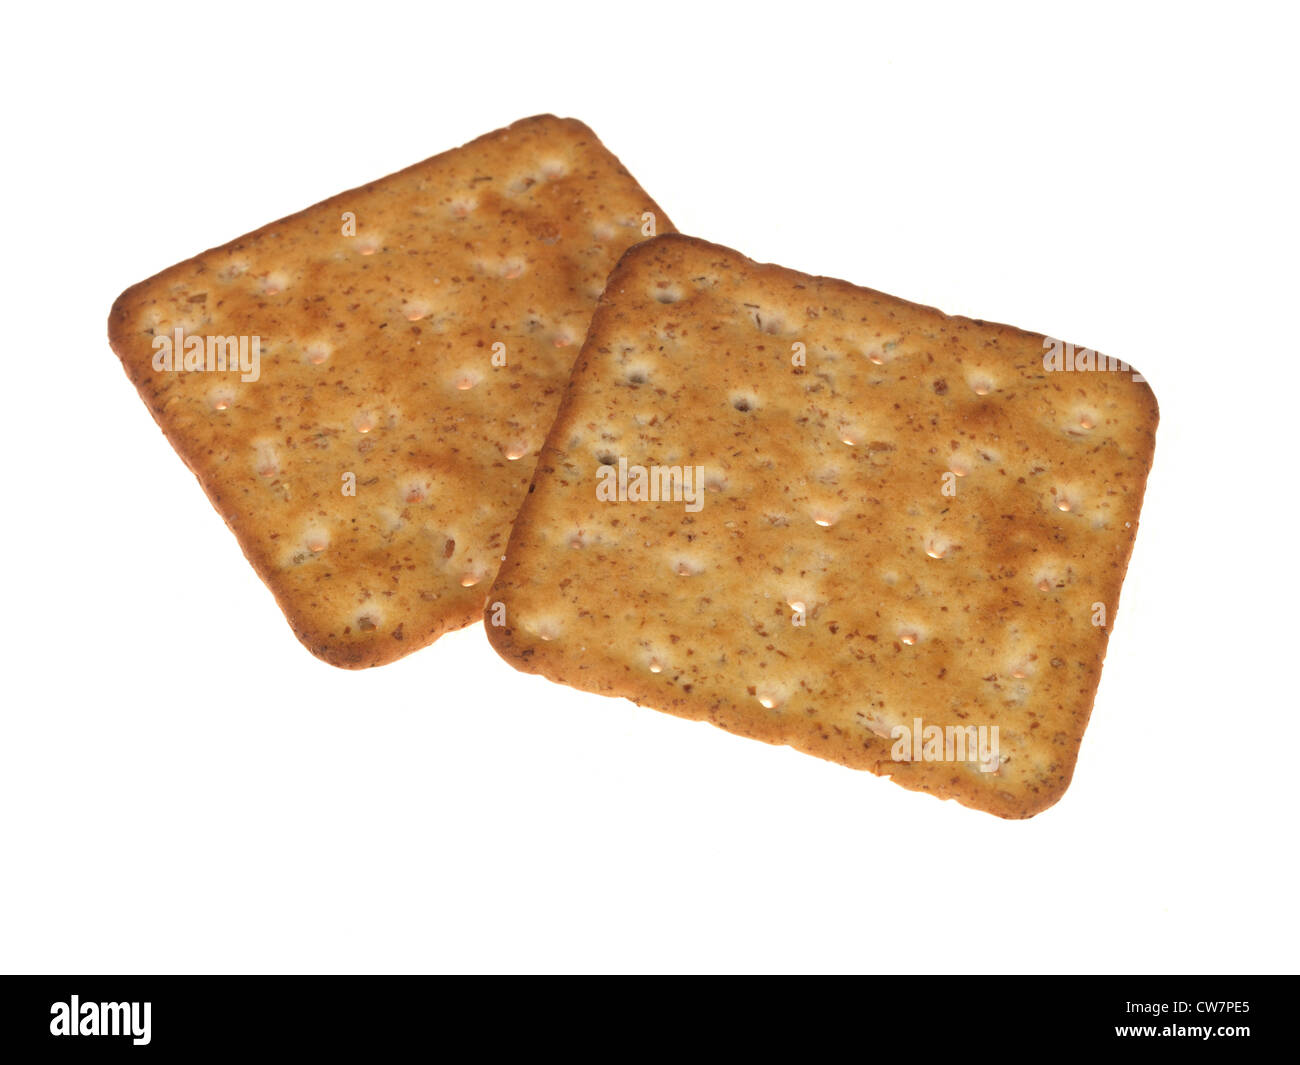 Multigrain galletas o galletas saladas suele comer con una selección de quesos aisladas contra un fondo blanco con ningún pueblo Foto de stock